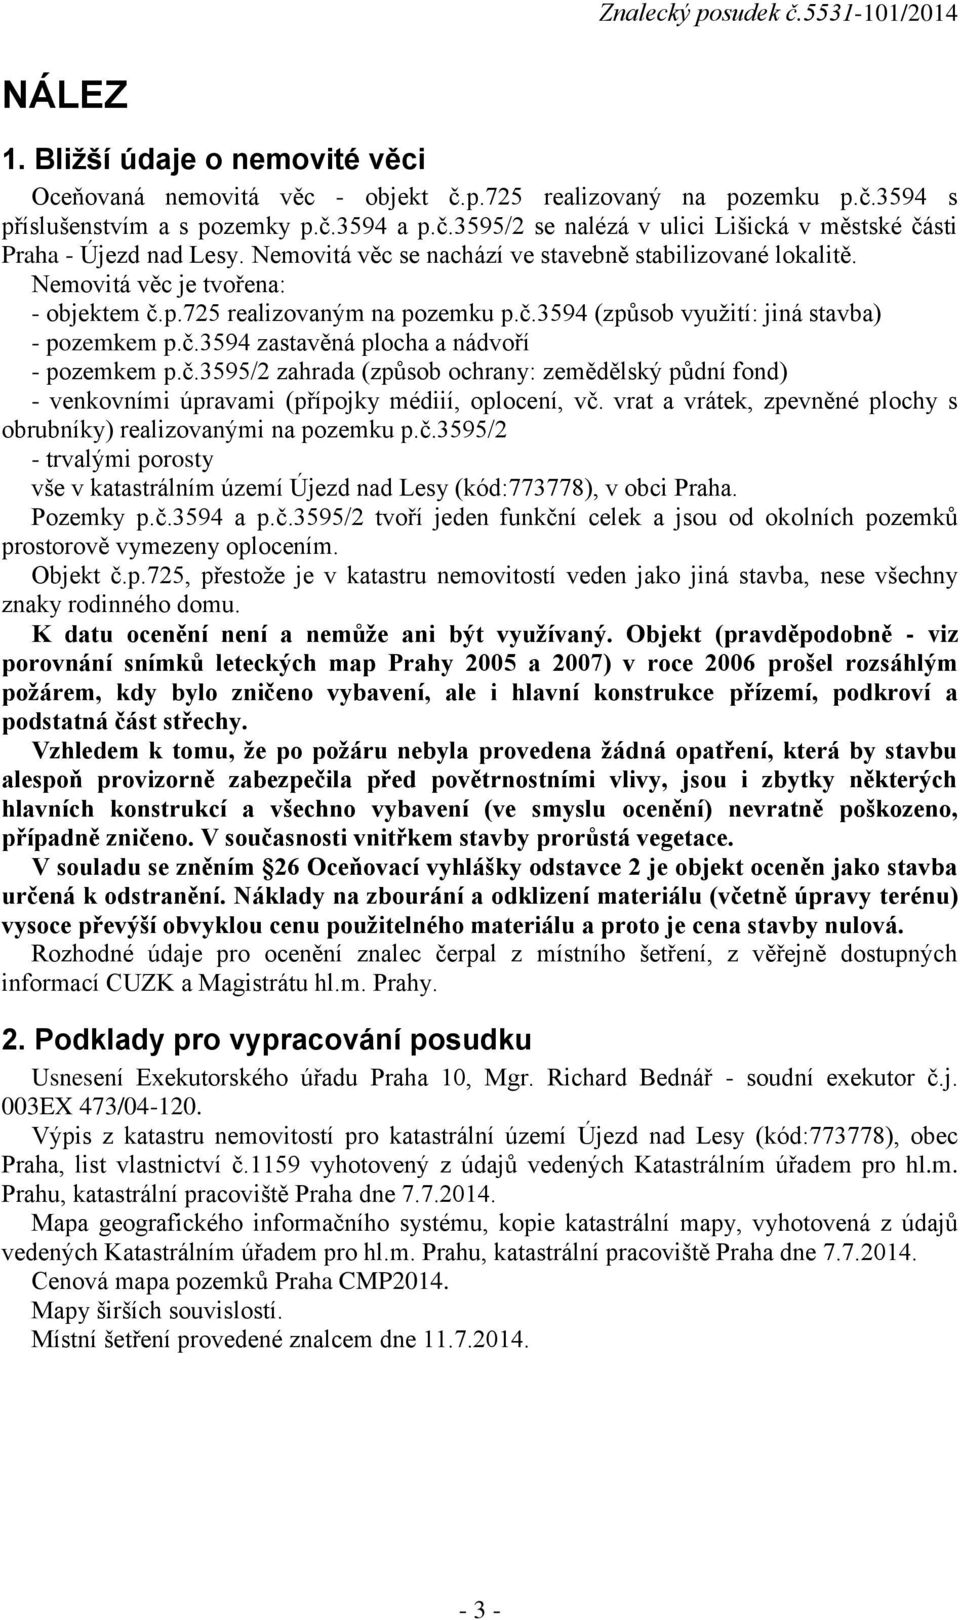 č.3595/2 zahrada (způsob ochrany: zemědělský půdní fond) - venkovními úpravami (přípojky médiií, oplocení, vč. vrat a vrátek, zpevněné plochy s obrubníky) realizovanými na pozemku p.č.3595/2 - trvalými porosty vše v katastrálním území Újezd nad Lesy (kód:773778), v obci Praha.